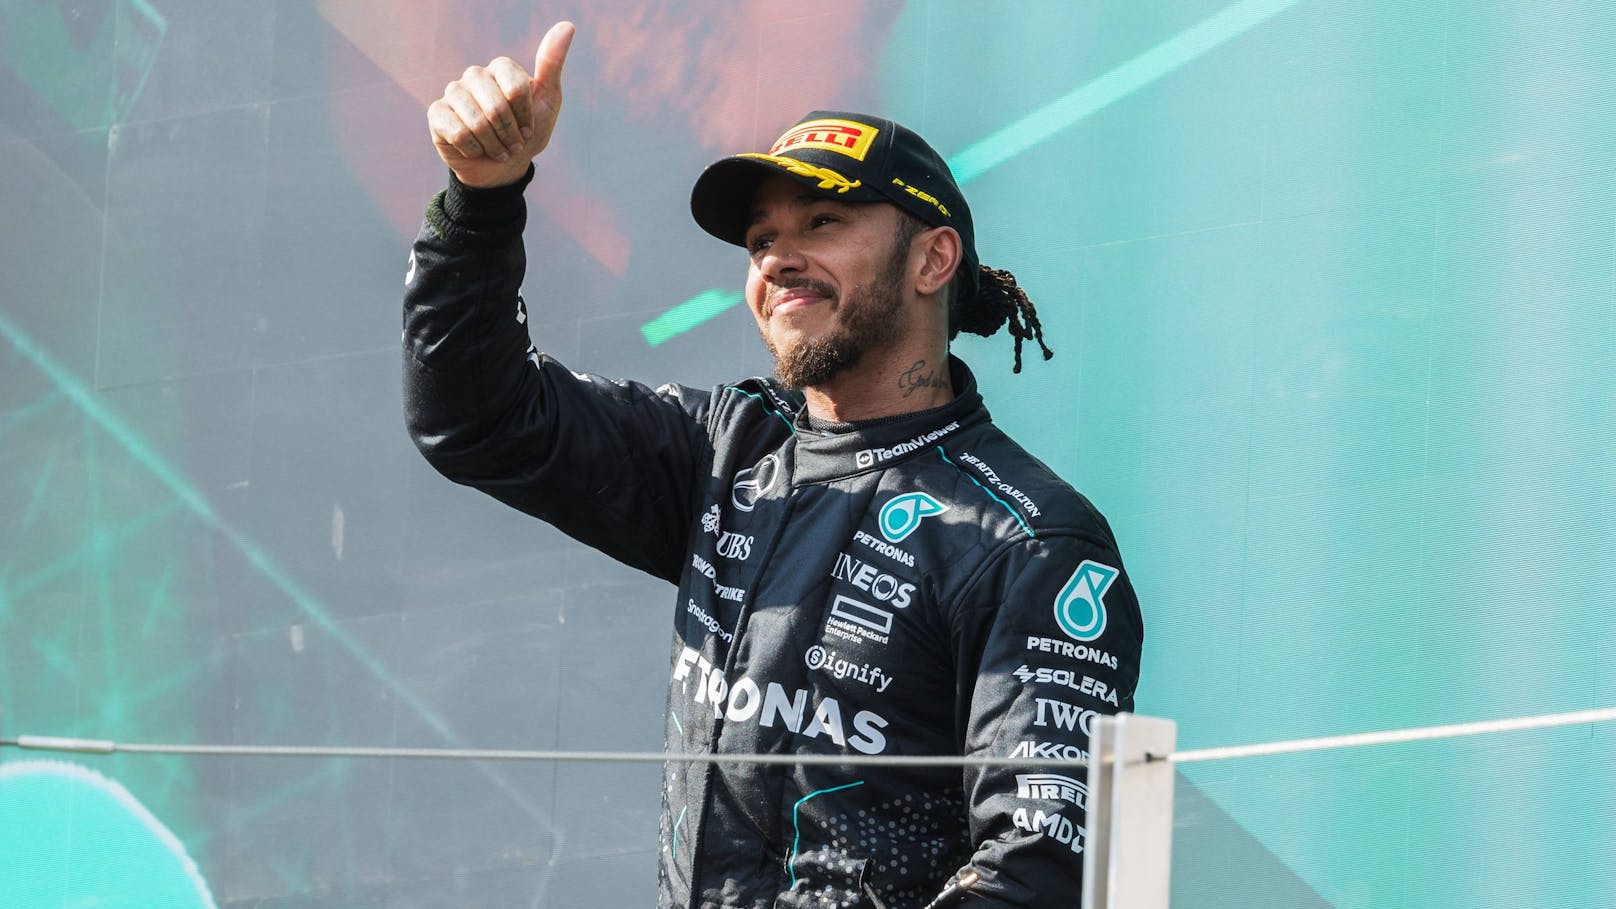 Zu viele Pokale – F1-Star Hamilton geht der Platz aus